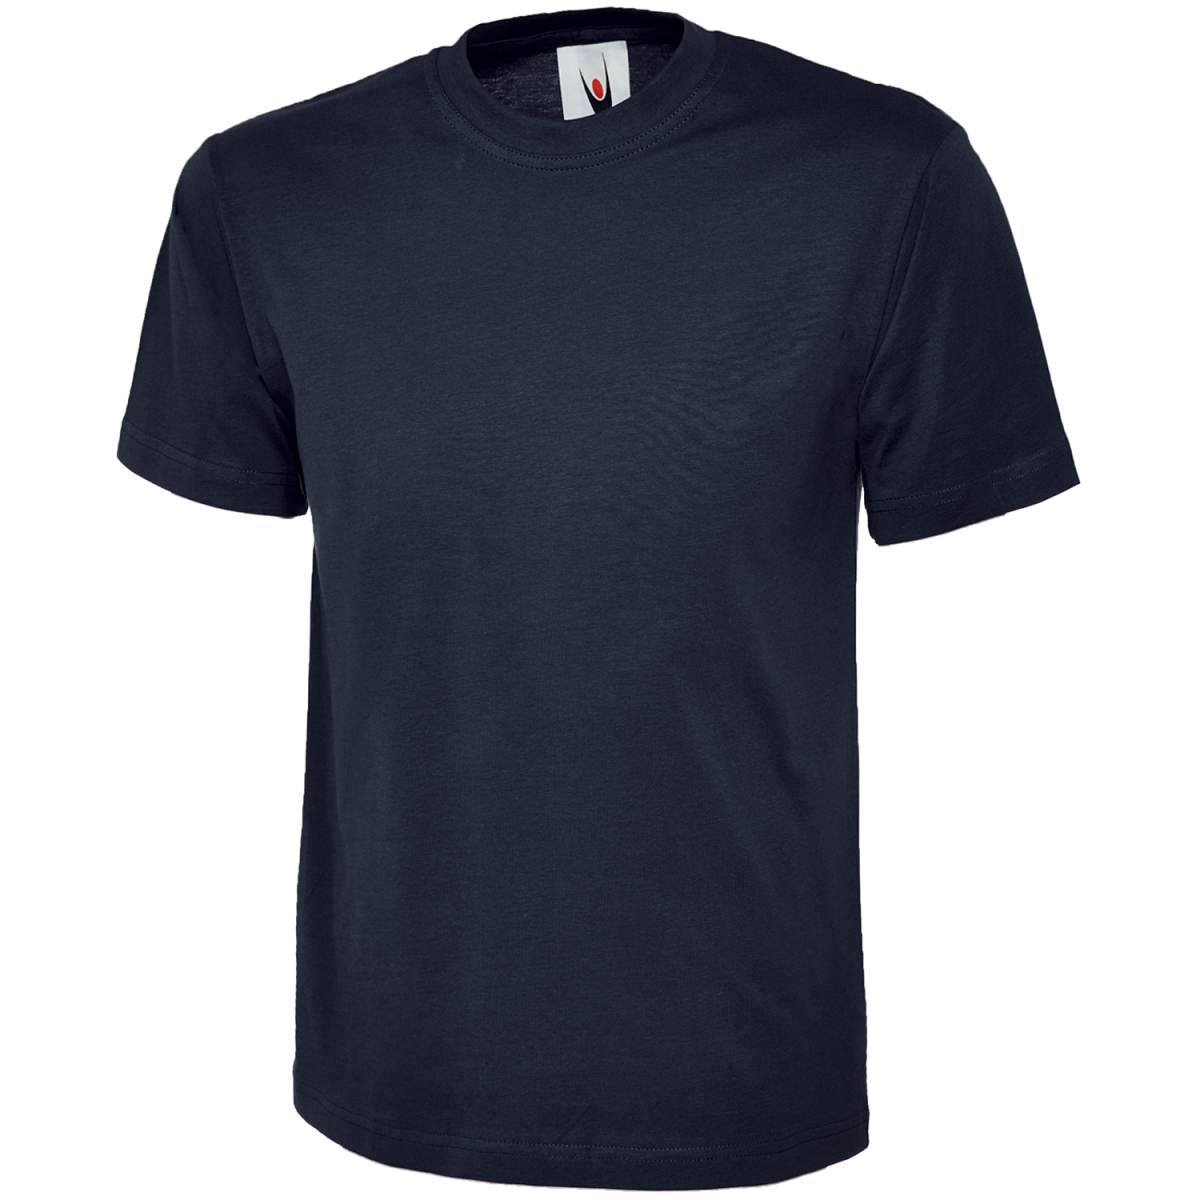 Moderne und ergonomische T-Shirts Modell - € elysee, ULRICH 4,49